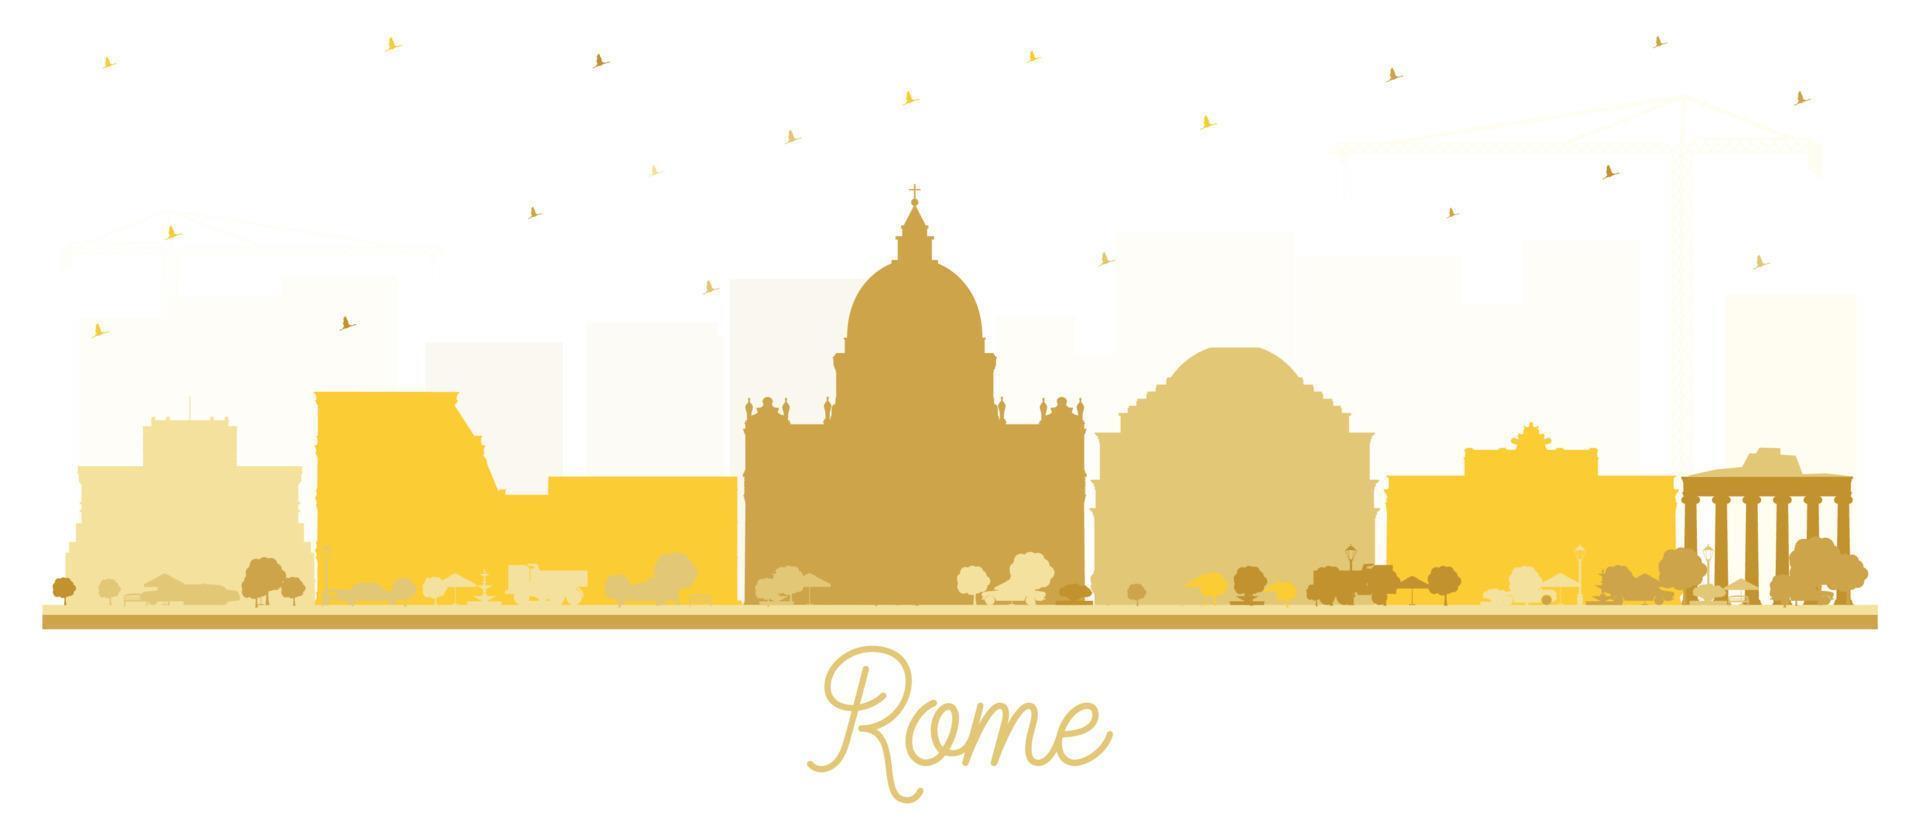 silueta del horizonte de la ciudad de roma italia con edificios dorados aislados en blanco. vector